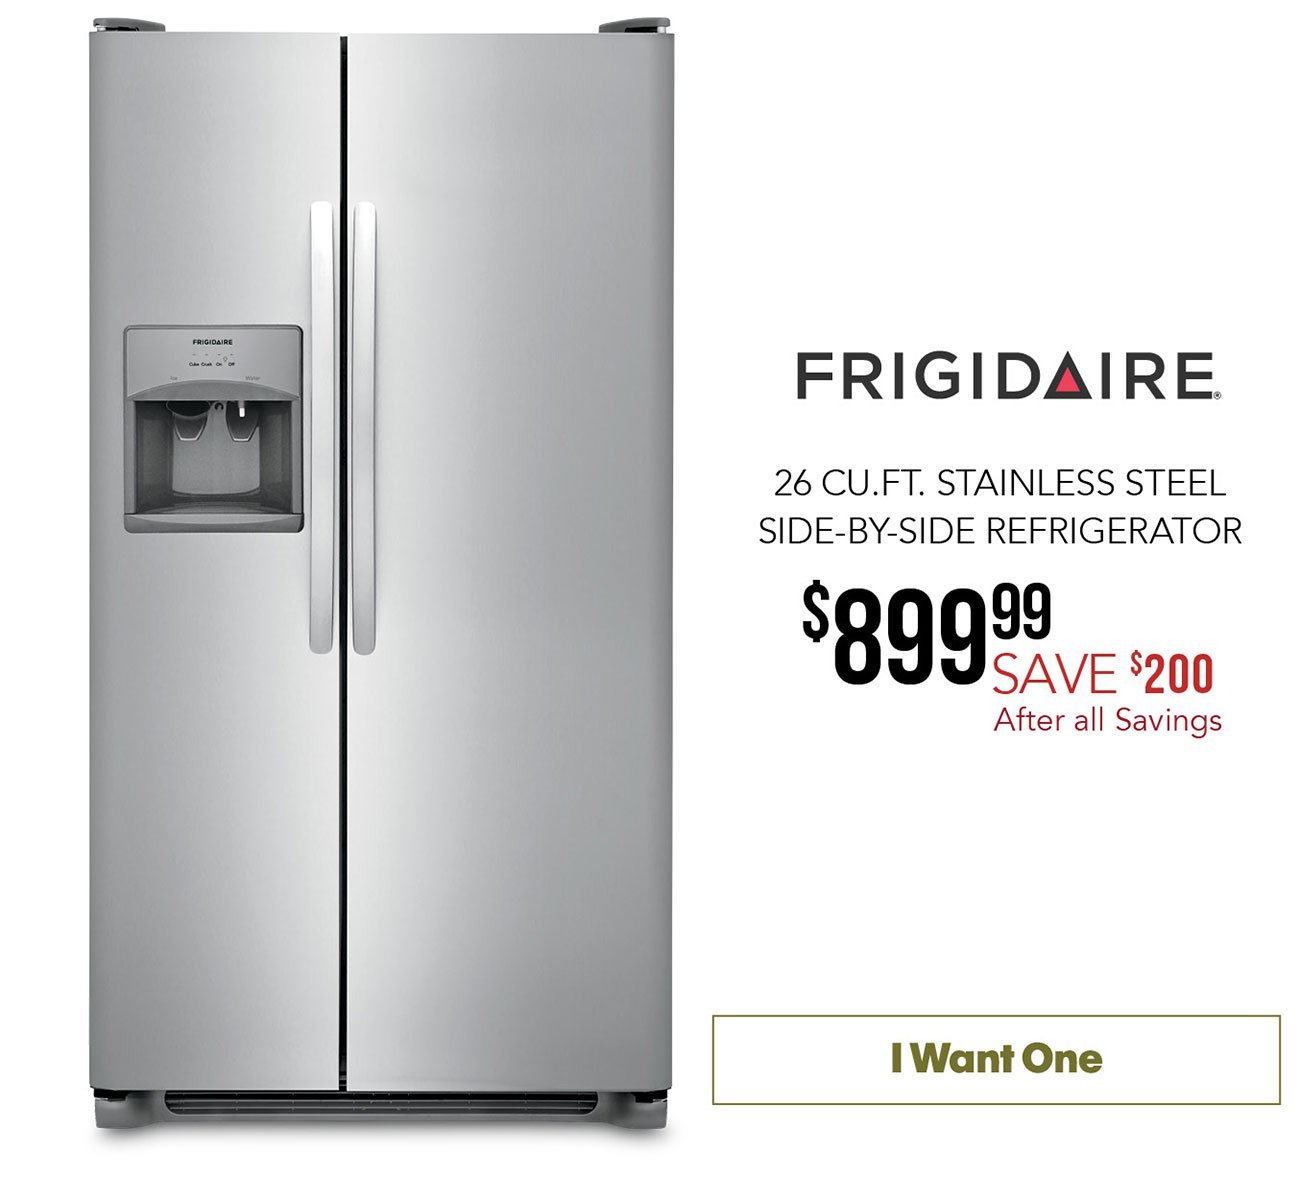 Frigidaire-refrigerator